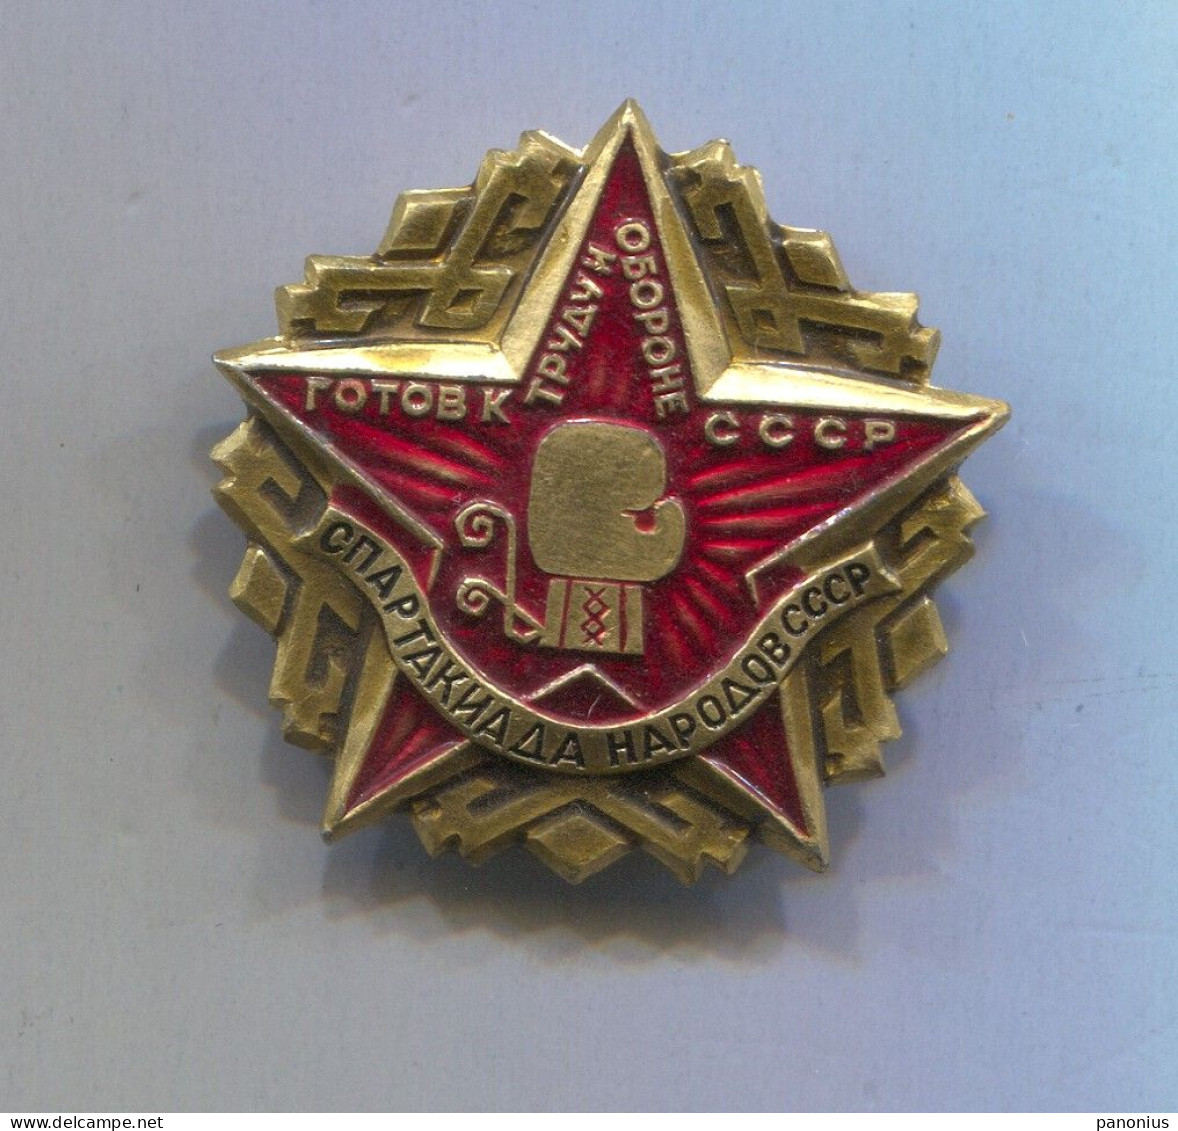 Boxing Box Boxen Pugilato - Spartakiada Russia USSR, Vintage Pin Badge Abzeichen - Boksen